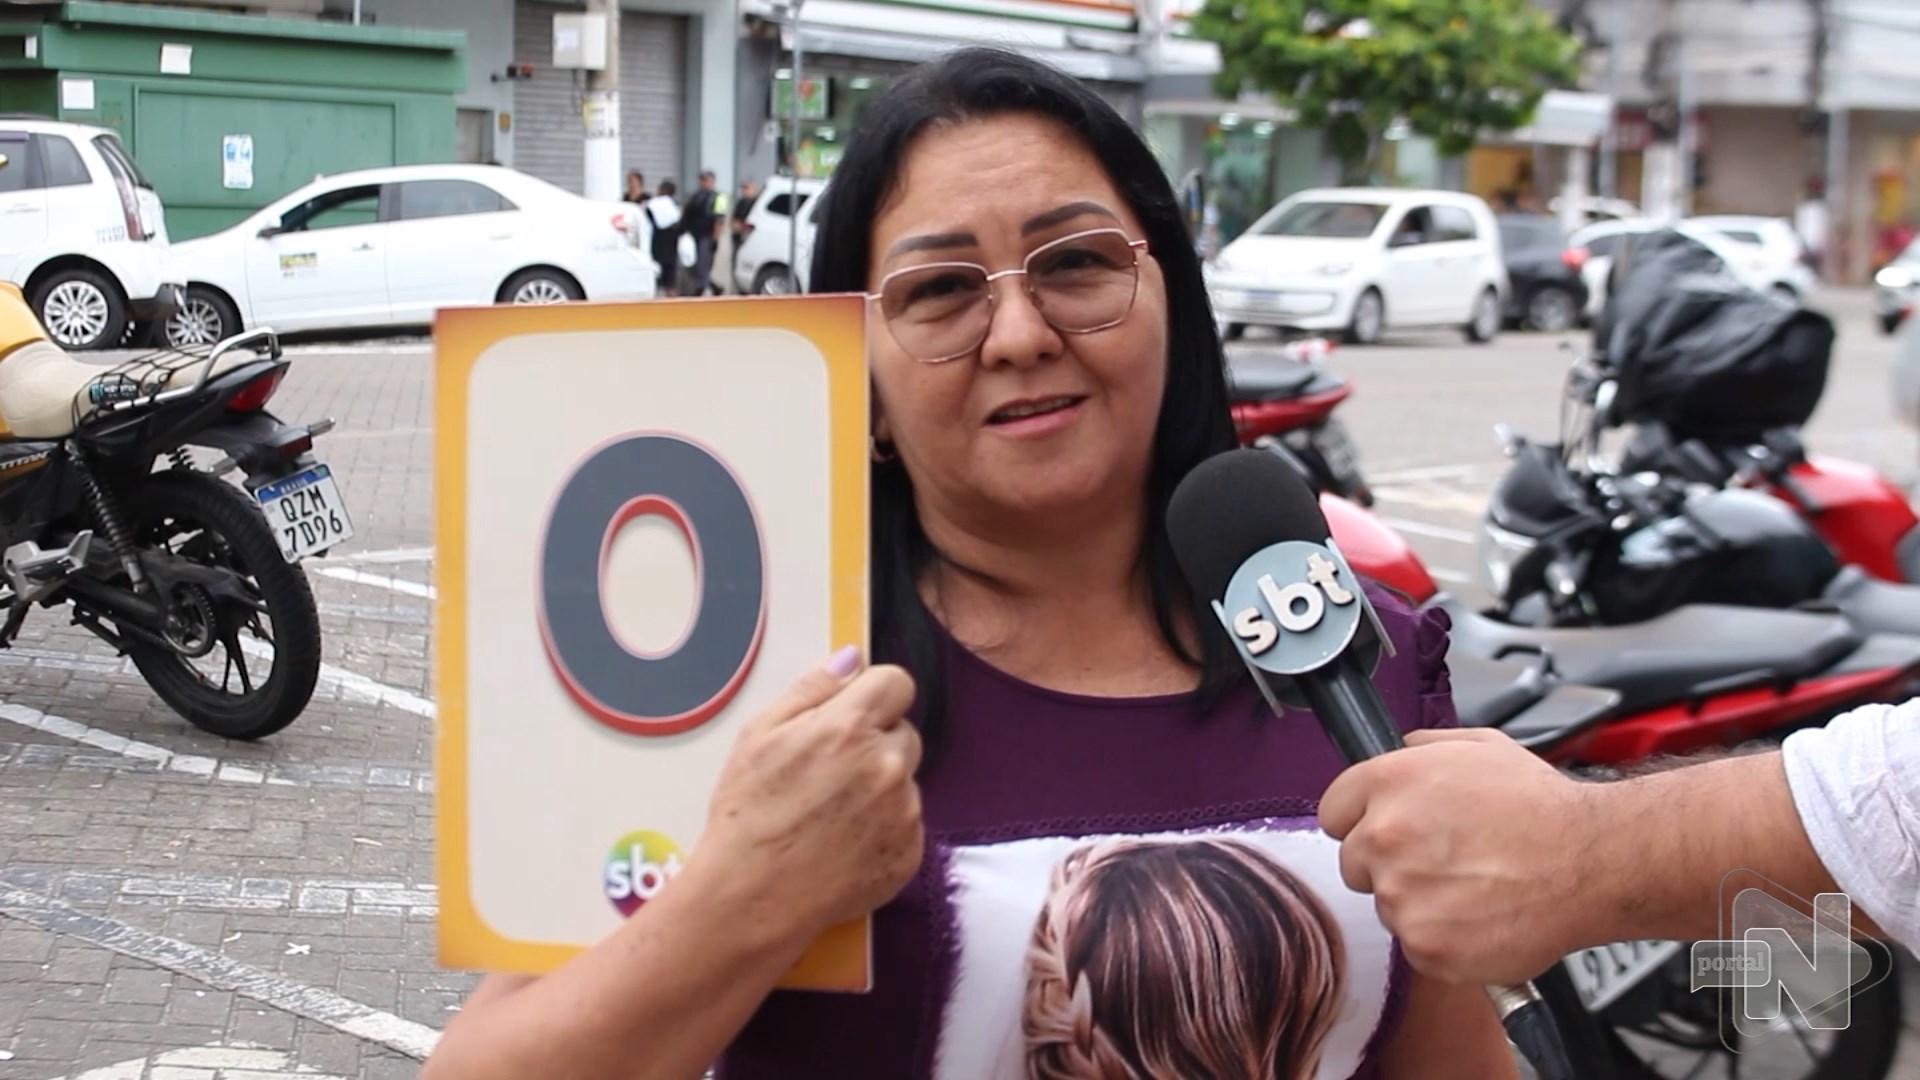 População fala e dá nota para segurança pública em Manaus - Reprodução/ TV Norte Amazonas